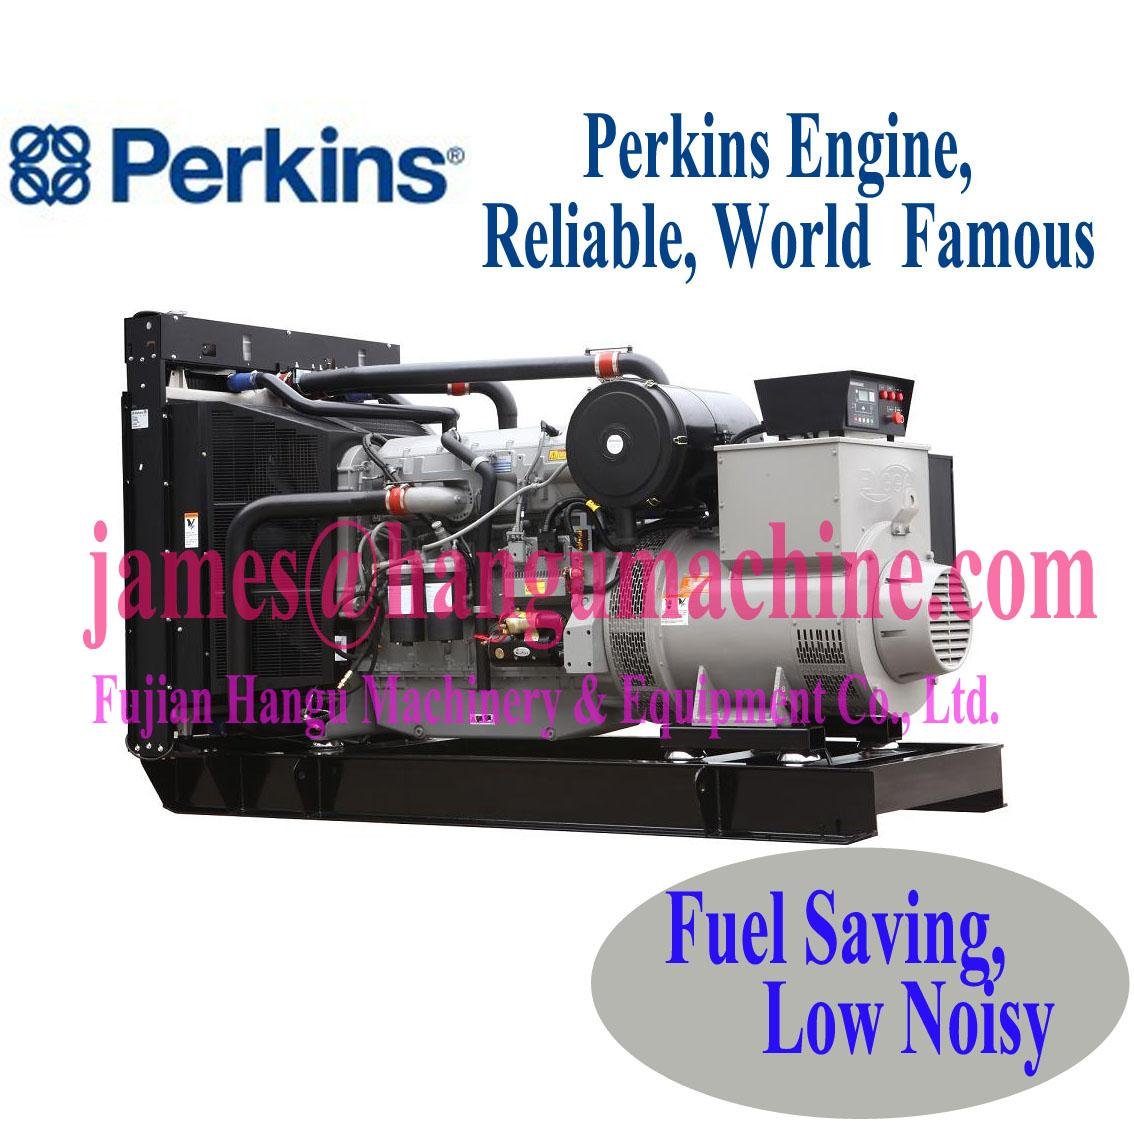 Diesel generator set powered by Perkins engine